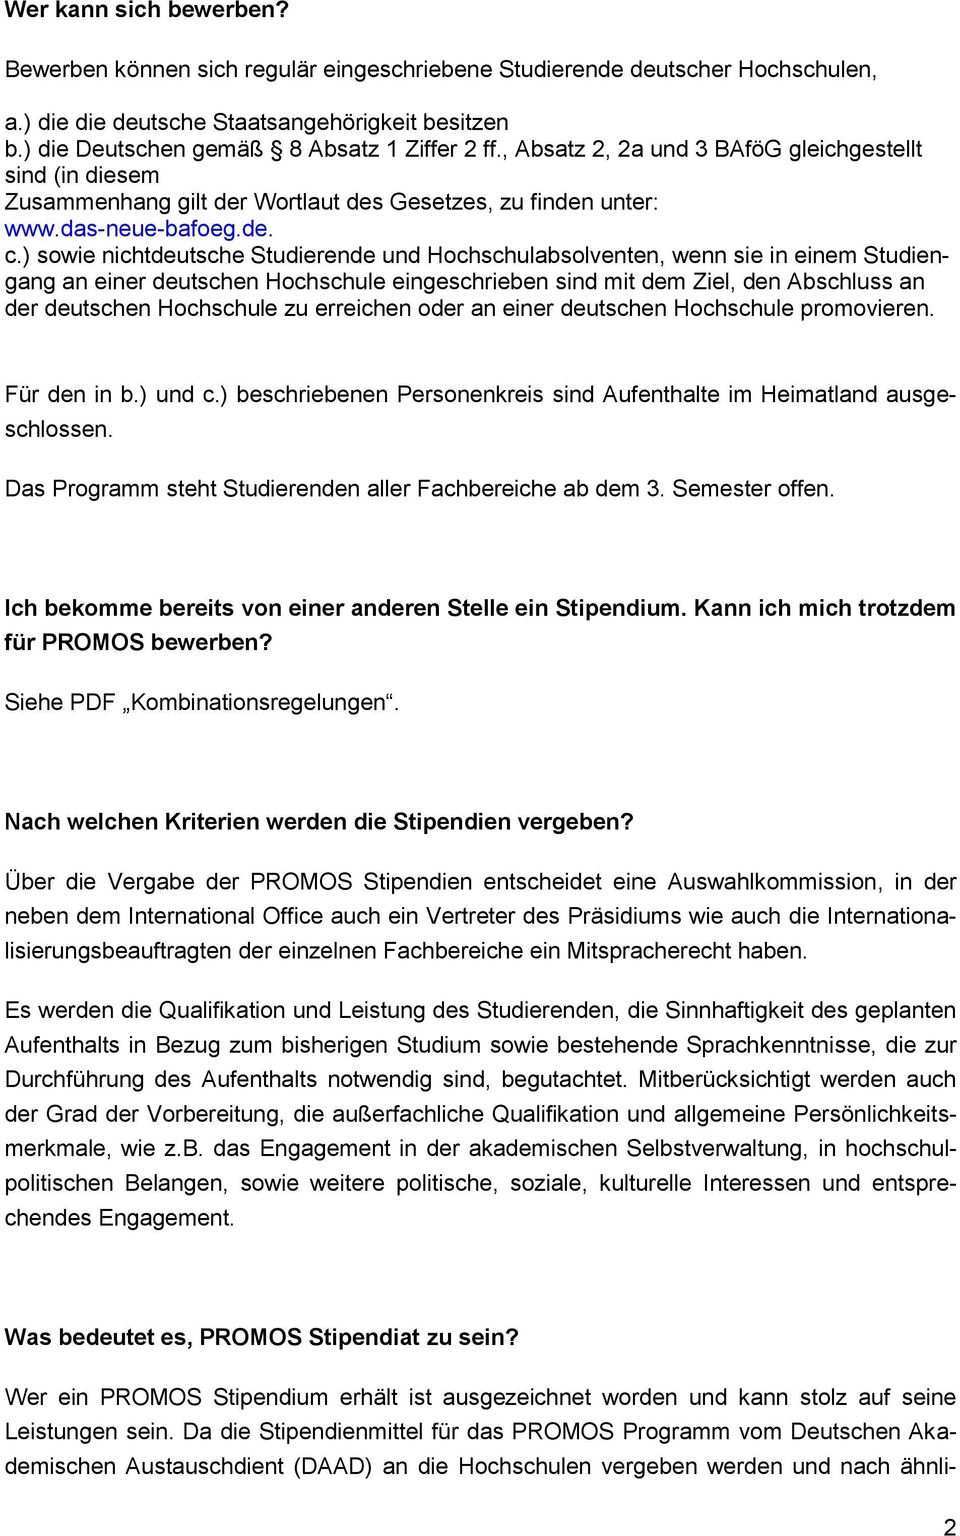 Promos 2015 Hinweise Zur Bewerbung An Der Fachhochschule Dusseldorf Pdf Free Download